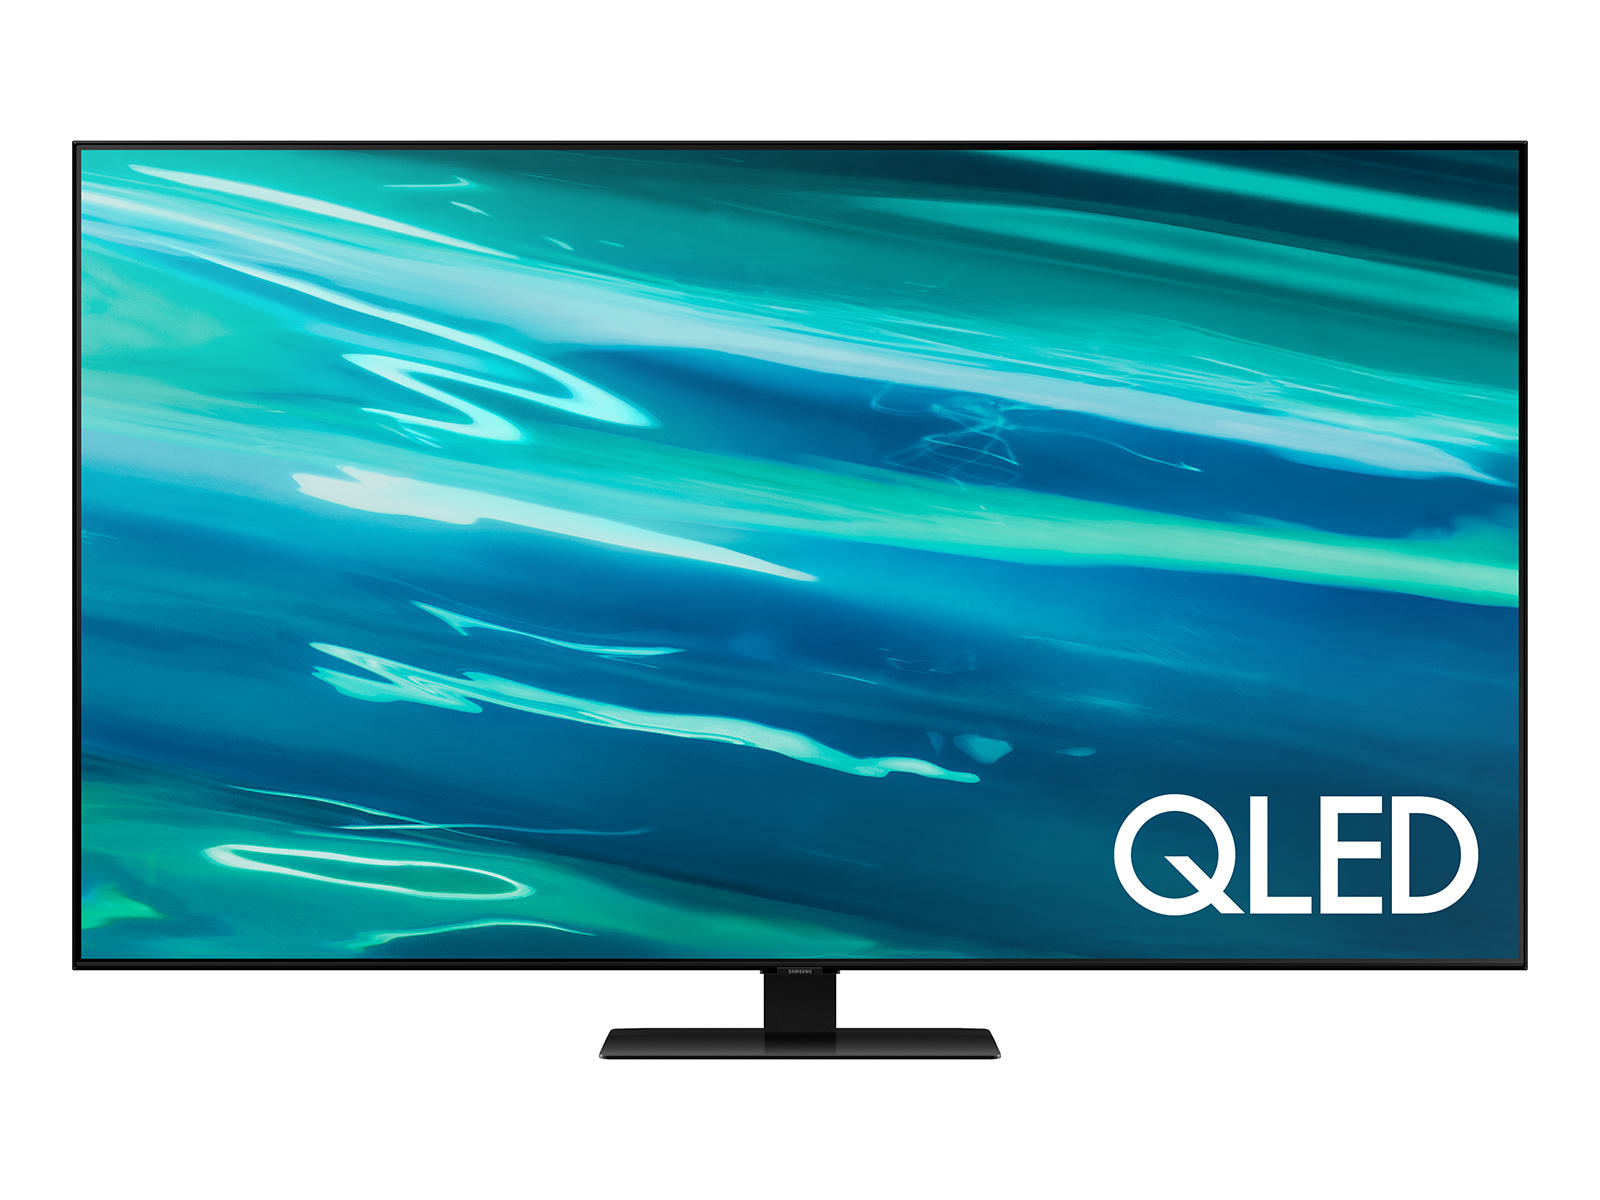 Samsung Q80A Series 55_QLED Class Smart TV_1